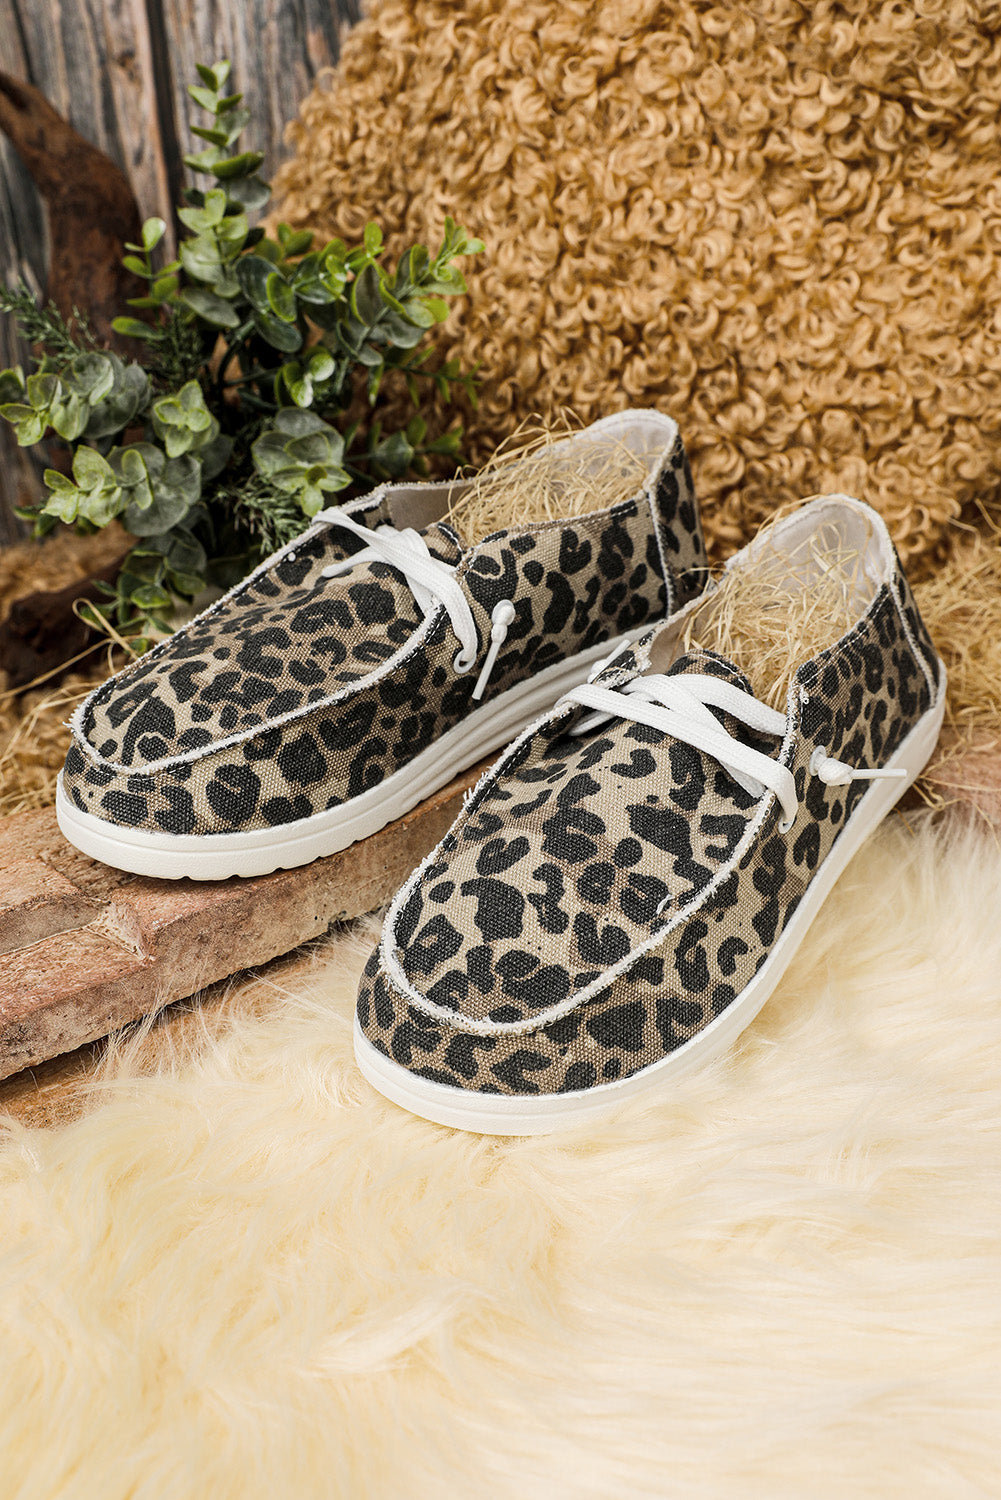 Leopard Slip On Flat Canvas Shoes Women's Shoes JT's Designer Fashion